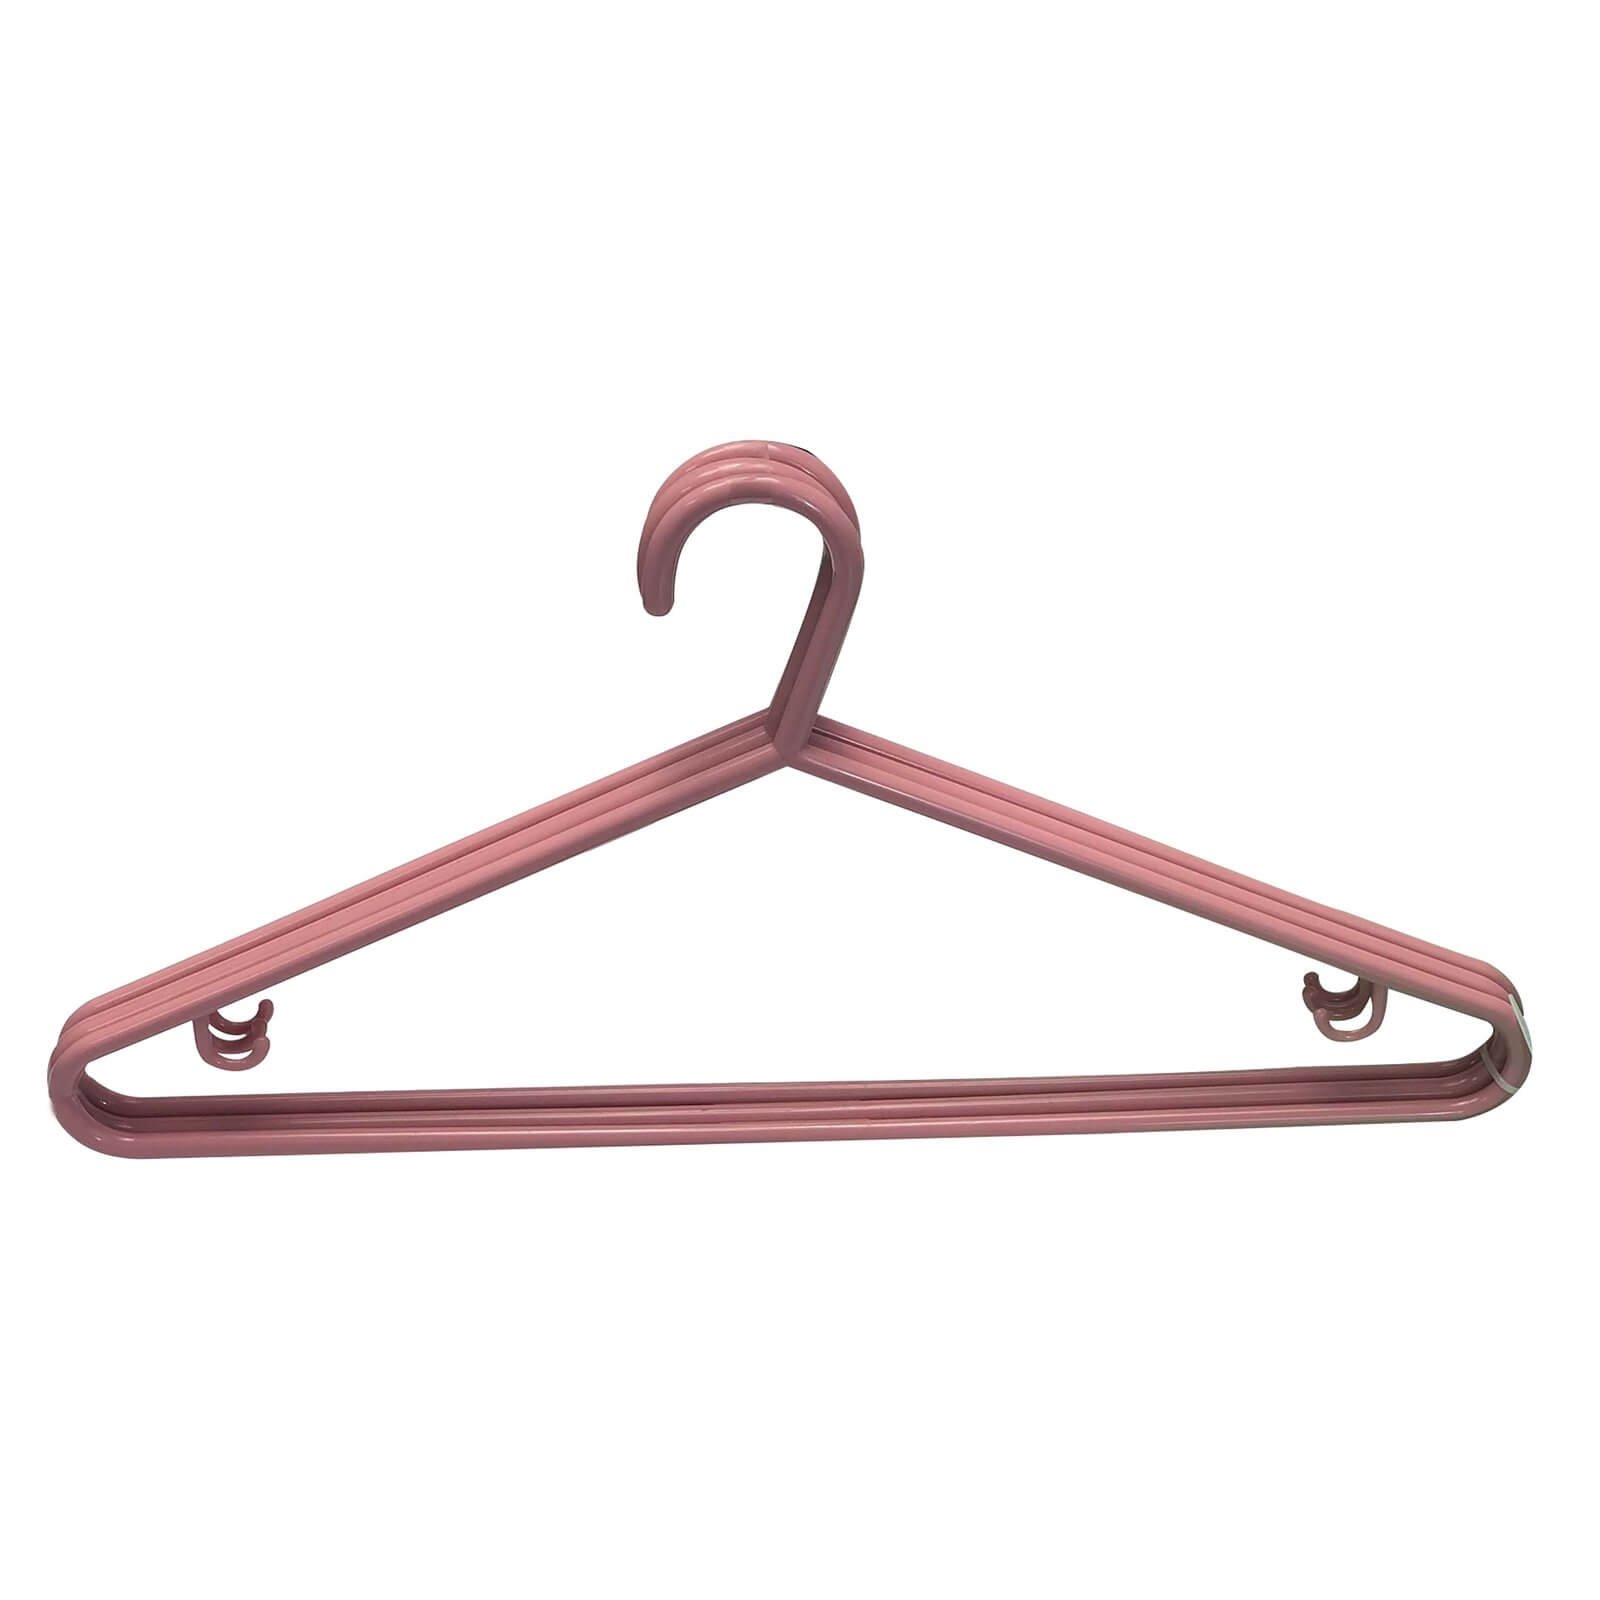 20 Plastic Clothes Hangers - Blush